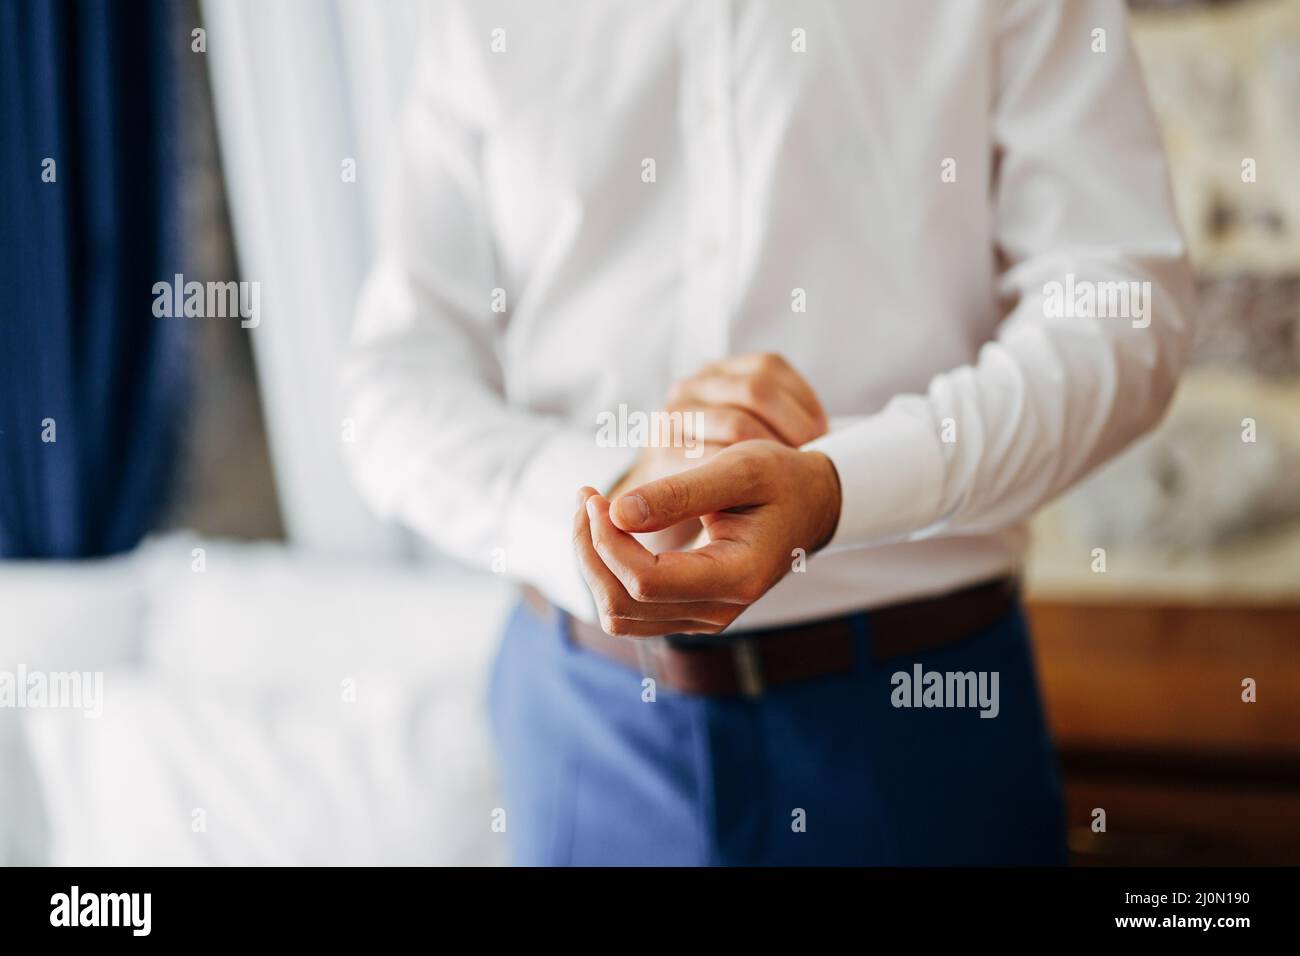 Mann in blauer Hose knöpft einen Knopf an der Manschette eines weißen Hemdes. Nahaufnahme Stockfoto